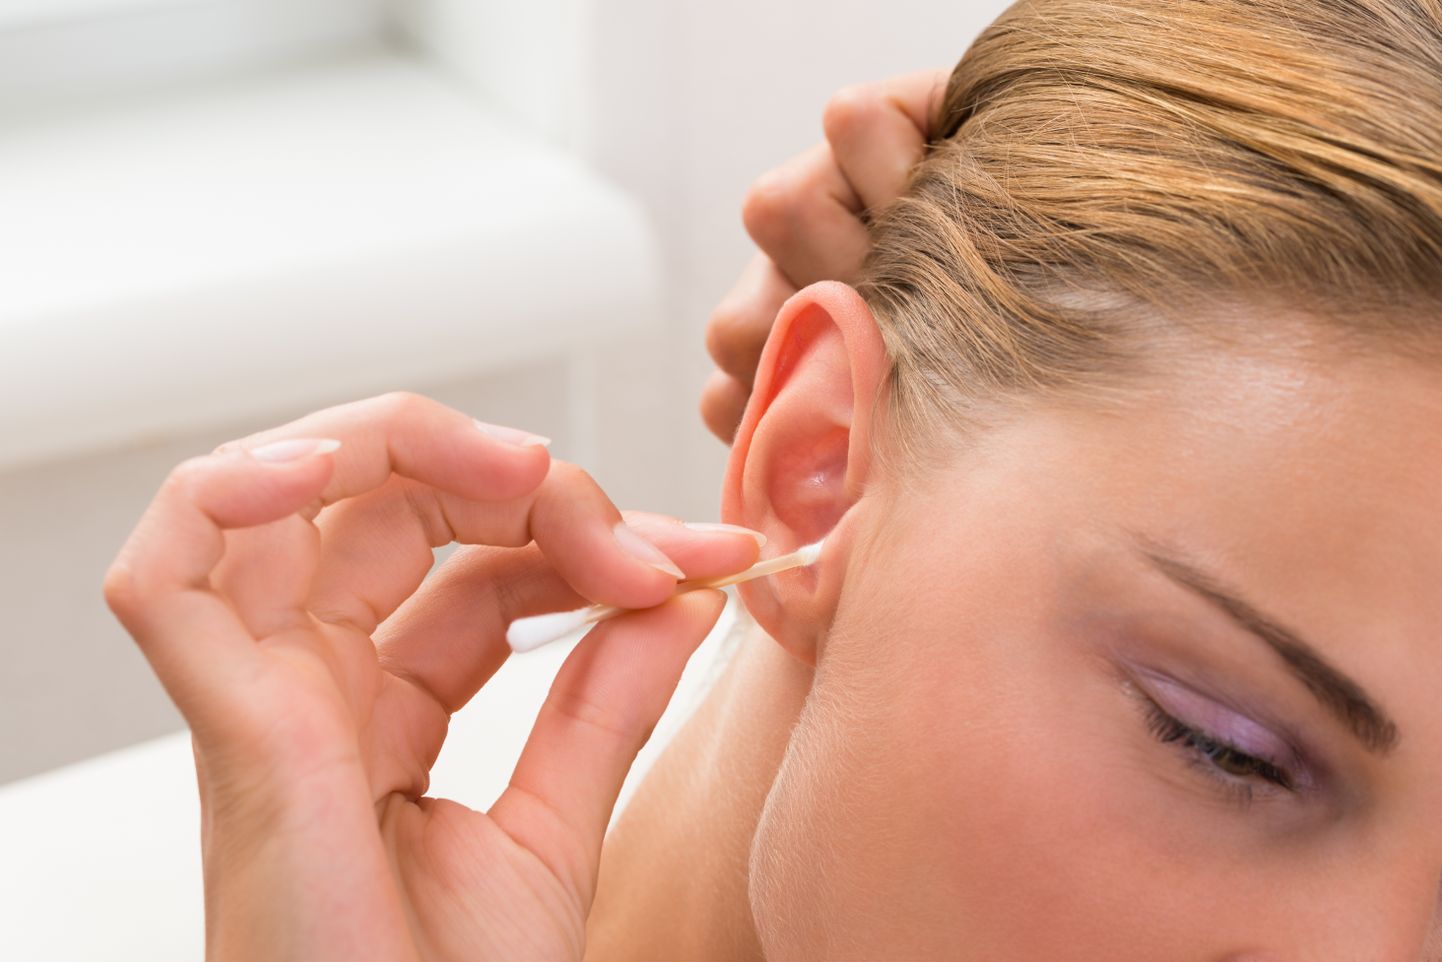 Vatitikkude kasutamine kõrvade puhastamiseks pole parim moodus, sest see võib lükata vaigu kõrvakanalis veel kaugemale.